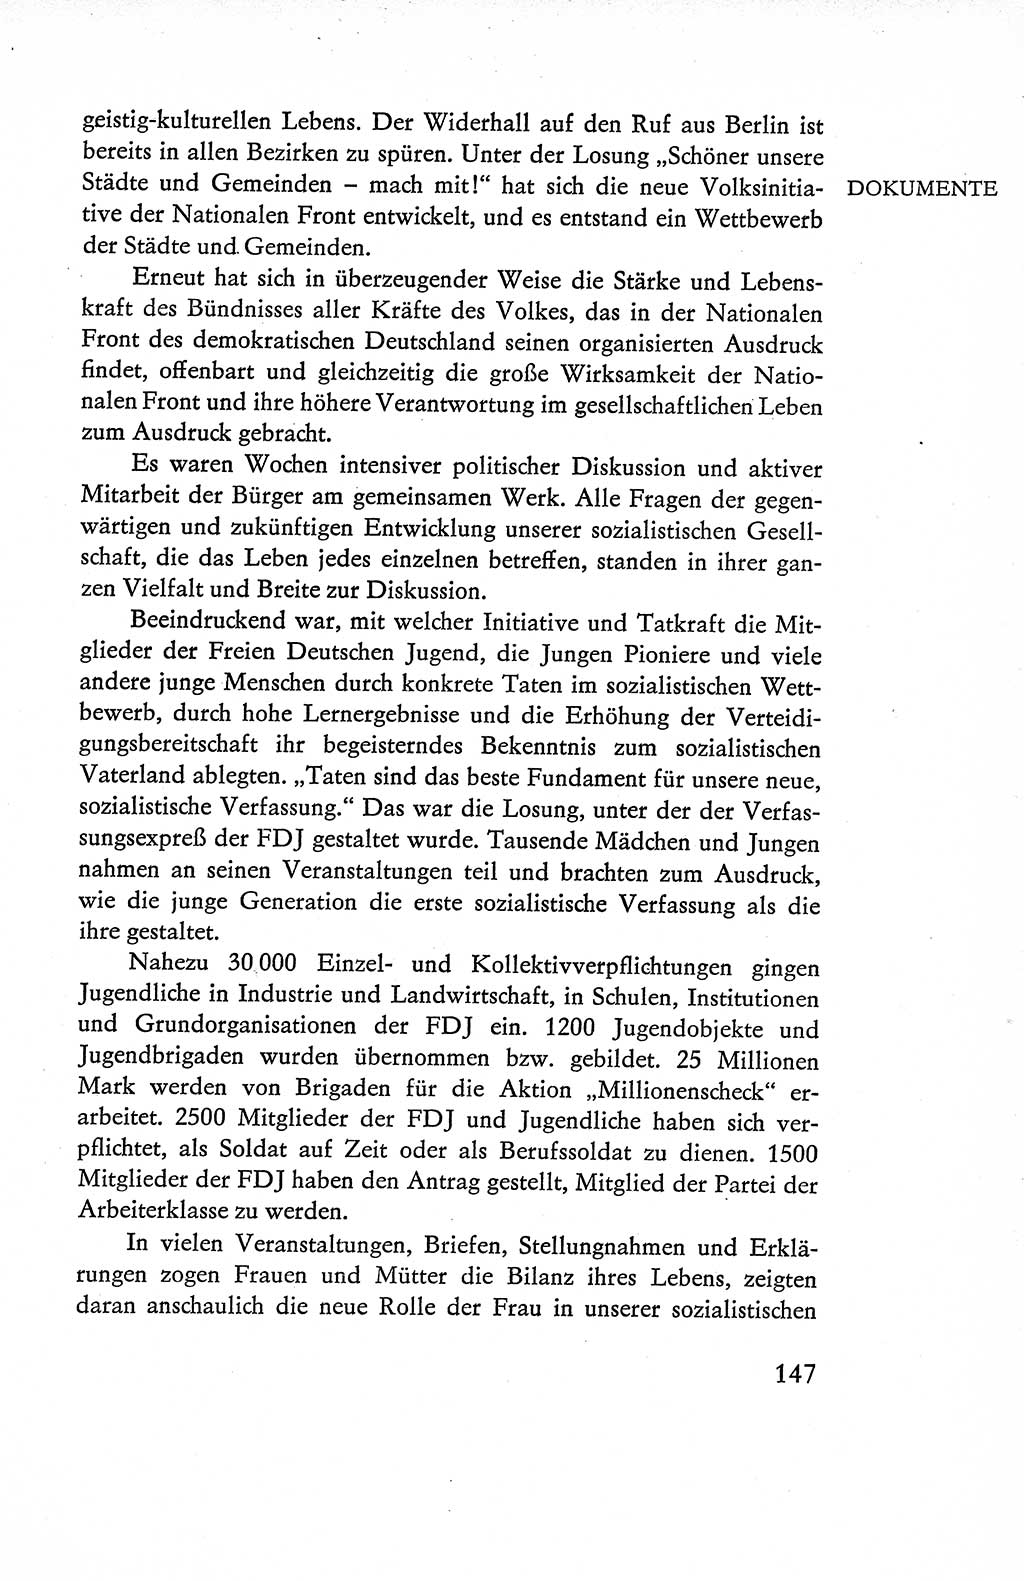 Verfassung der Deutschen Demokratischen Republik (DDR), Dokumente, Kommentar 1969, Band 1, Seite 147 (Verf. DDR Dok. Komm. 1969, Bd. 1, S. 147)